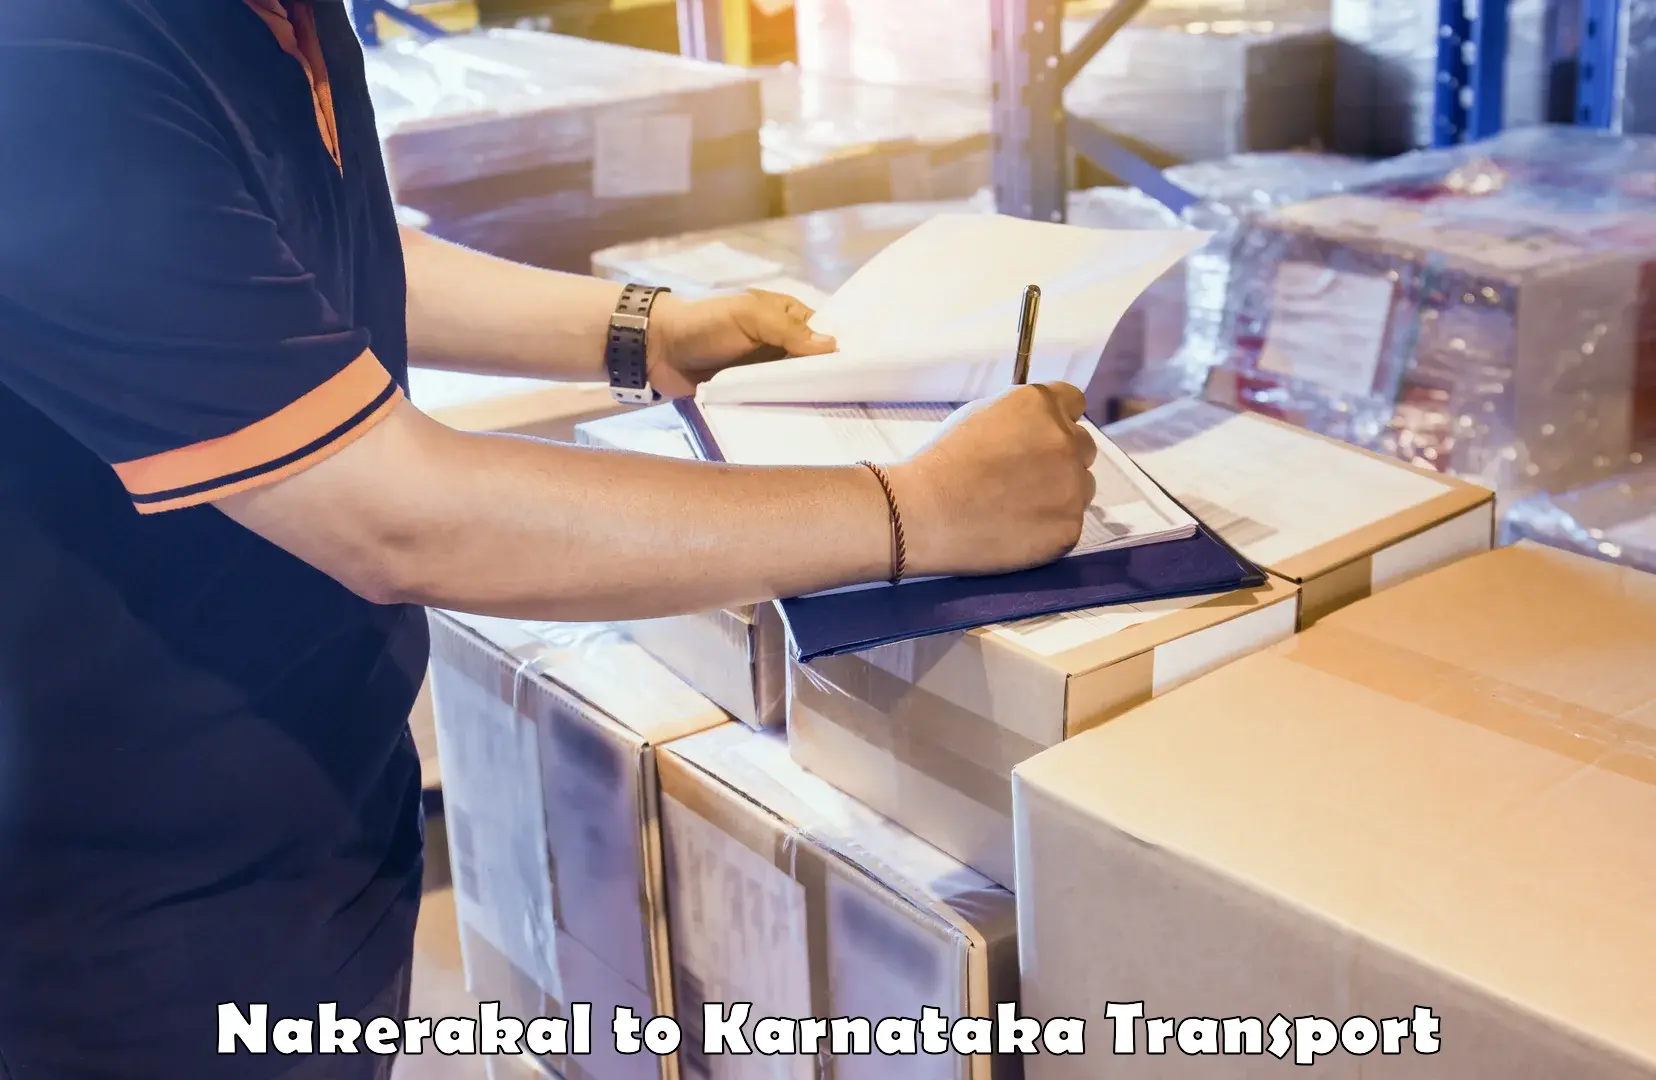 Two wheeler parcel service Nakerakal to Karnataka